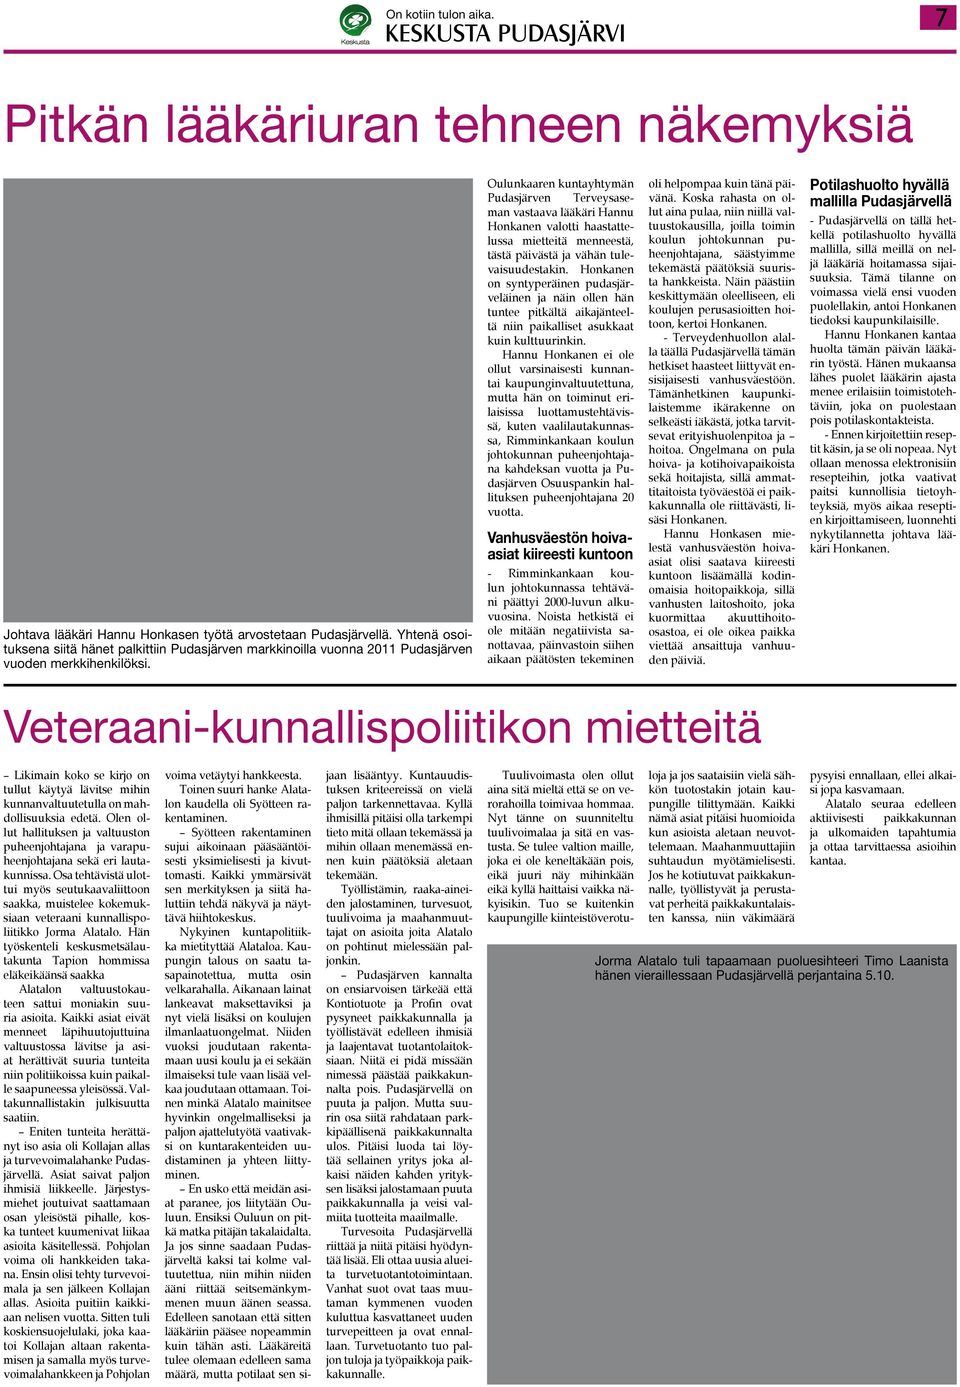 Oulunkaaren kuntayhtymän Pudasjärven Terveysaseman vastaava lääkäri Hannu Honkanen valotti haastattelussa mietteitä menneestä, tästä päivästä ja vähän tulevaisuudestakin.